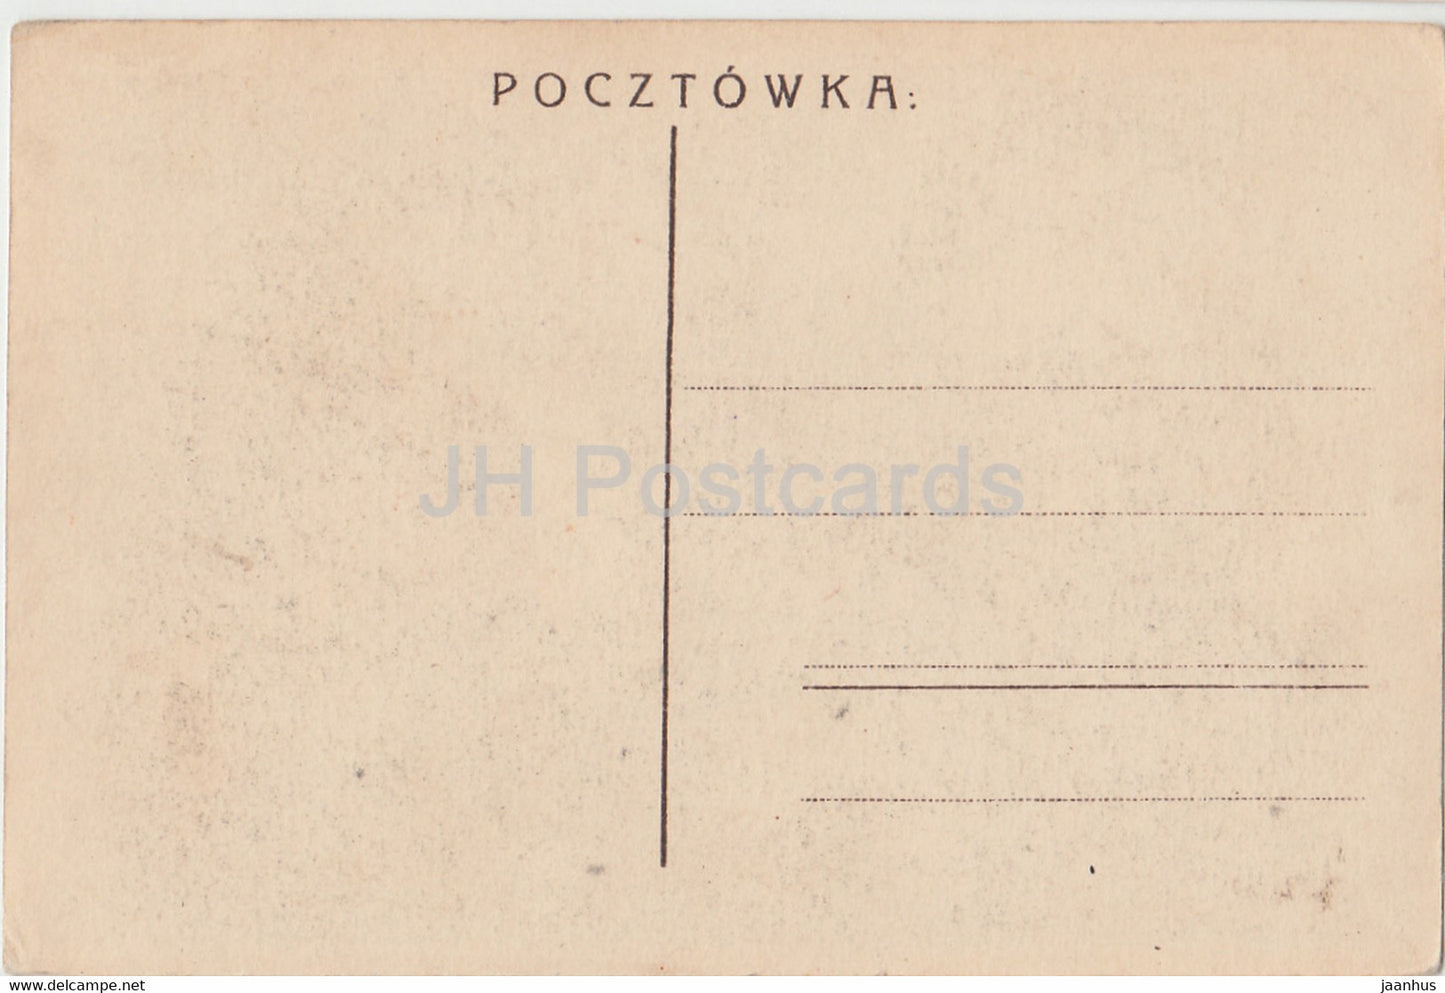 Czestochowa - Klasztor Jasnogorski - monastery - old postcard - Poland - unused